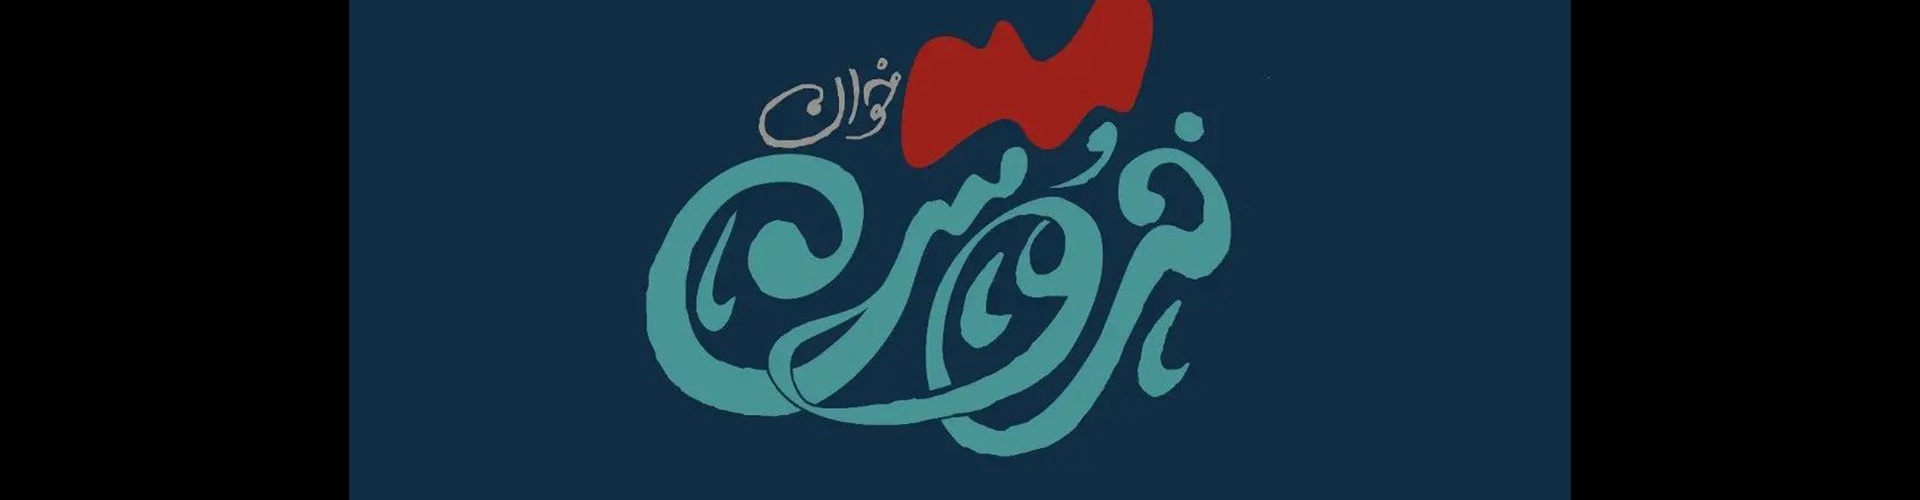 گالری آثار گرافیک بابک رخشنده از ایران